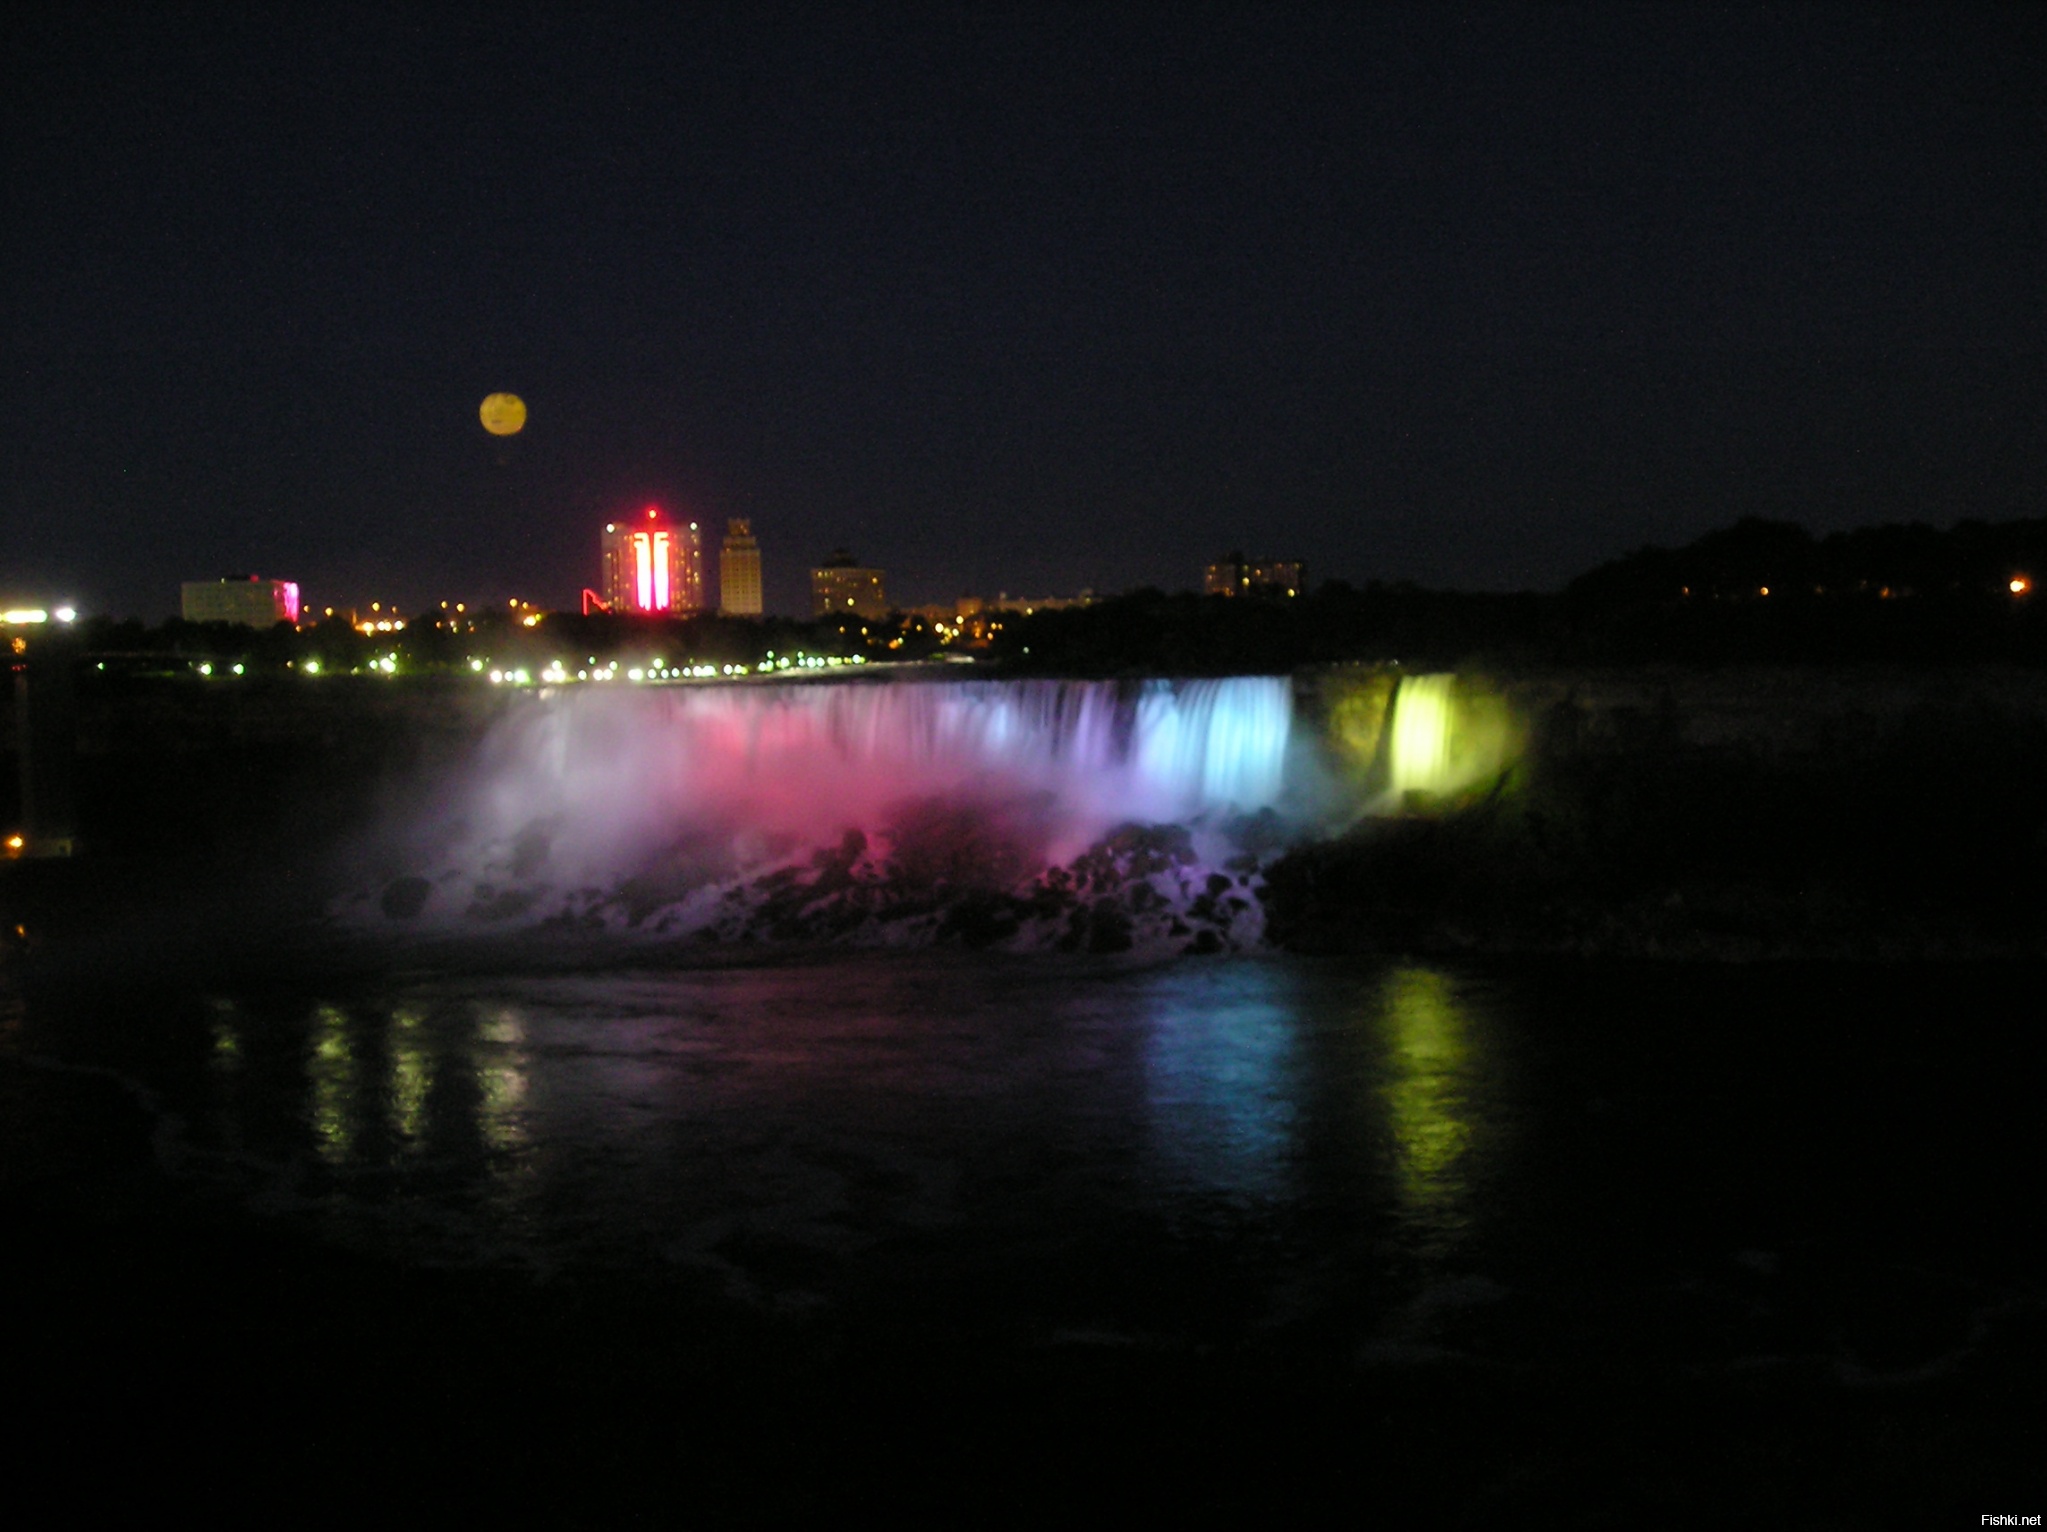 Ну и напоследок ночной водопад. Его разноцветными прожекторами разукрашивают.

Прошу прощения за качество фоток и за заваленый горизонт. Не профессионал я, к сожалению.